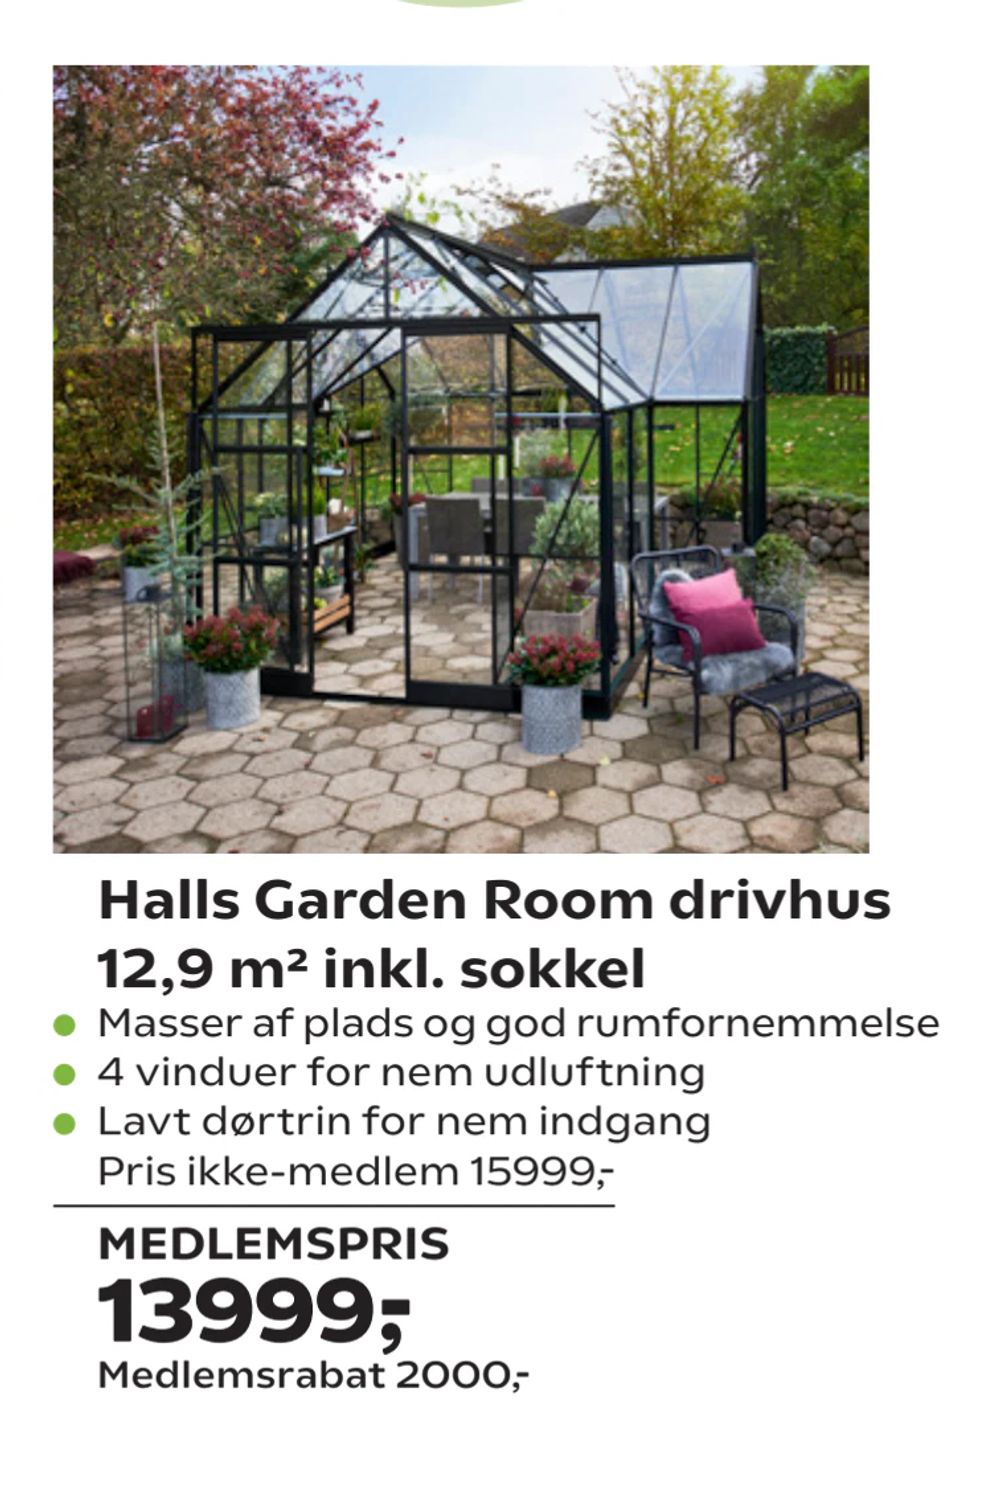 Tilbud på Halls Garden Room drivhus 12,9 m² inkl. sokkel fra Coop.dk til 15.999 kr.